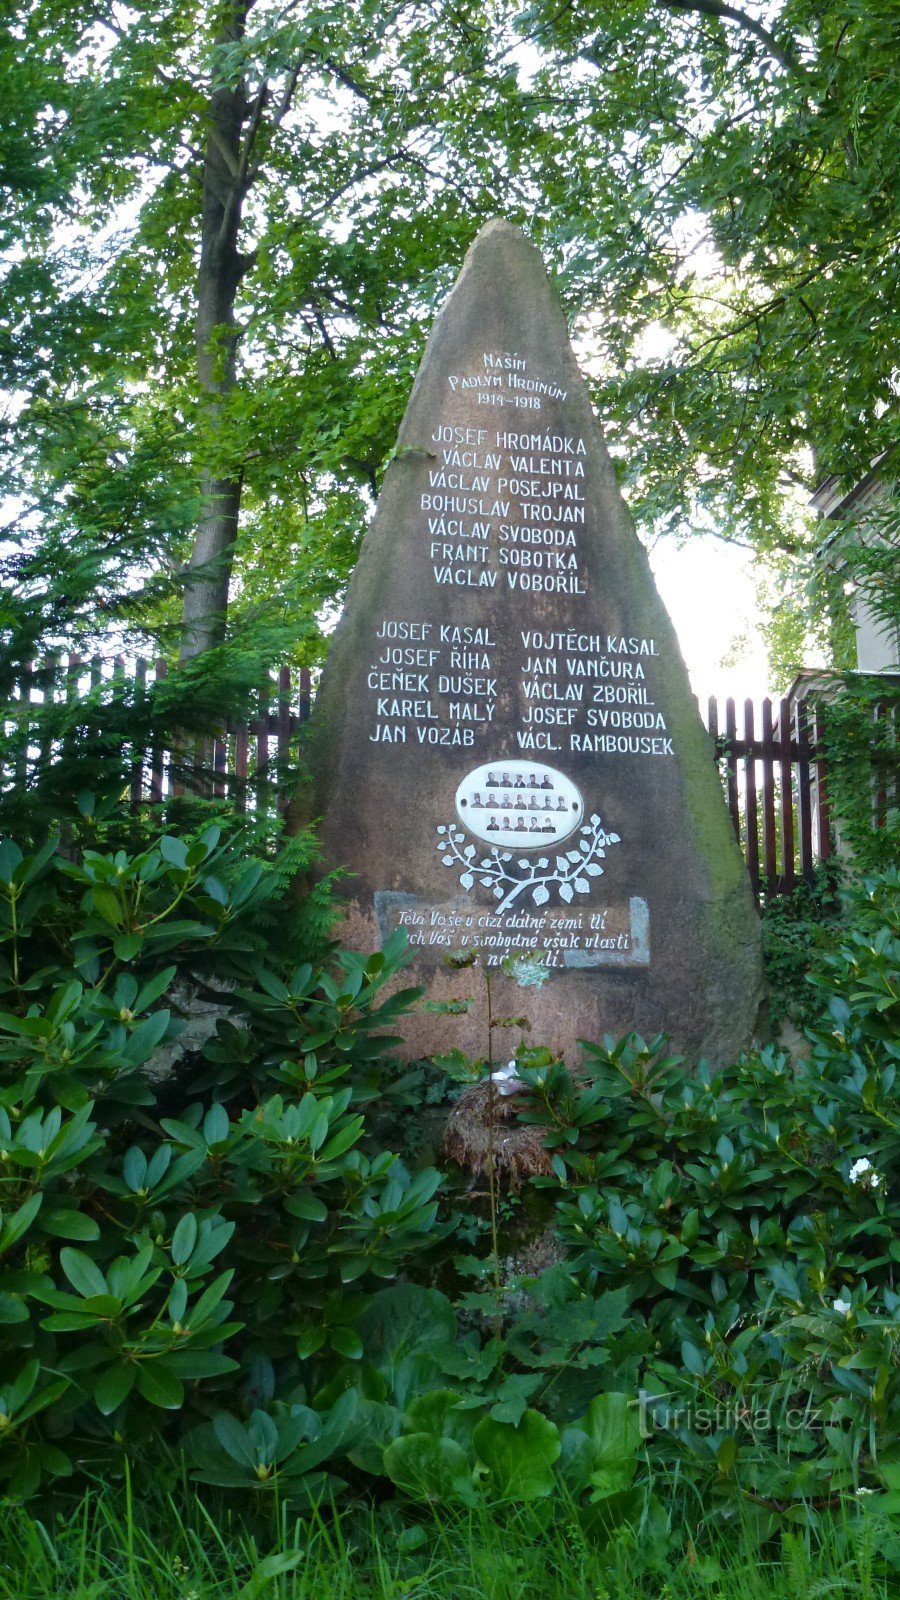 17 cái tên được khắc trong tượng đài